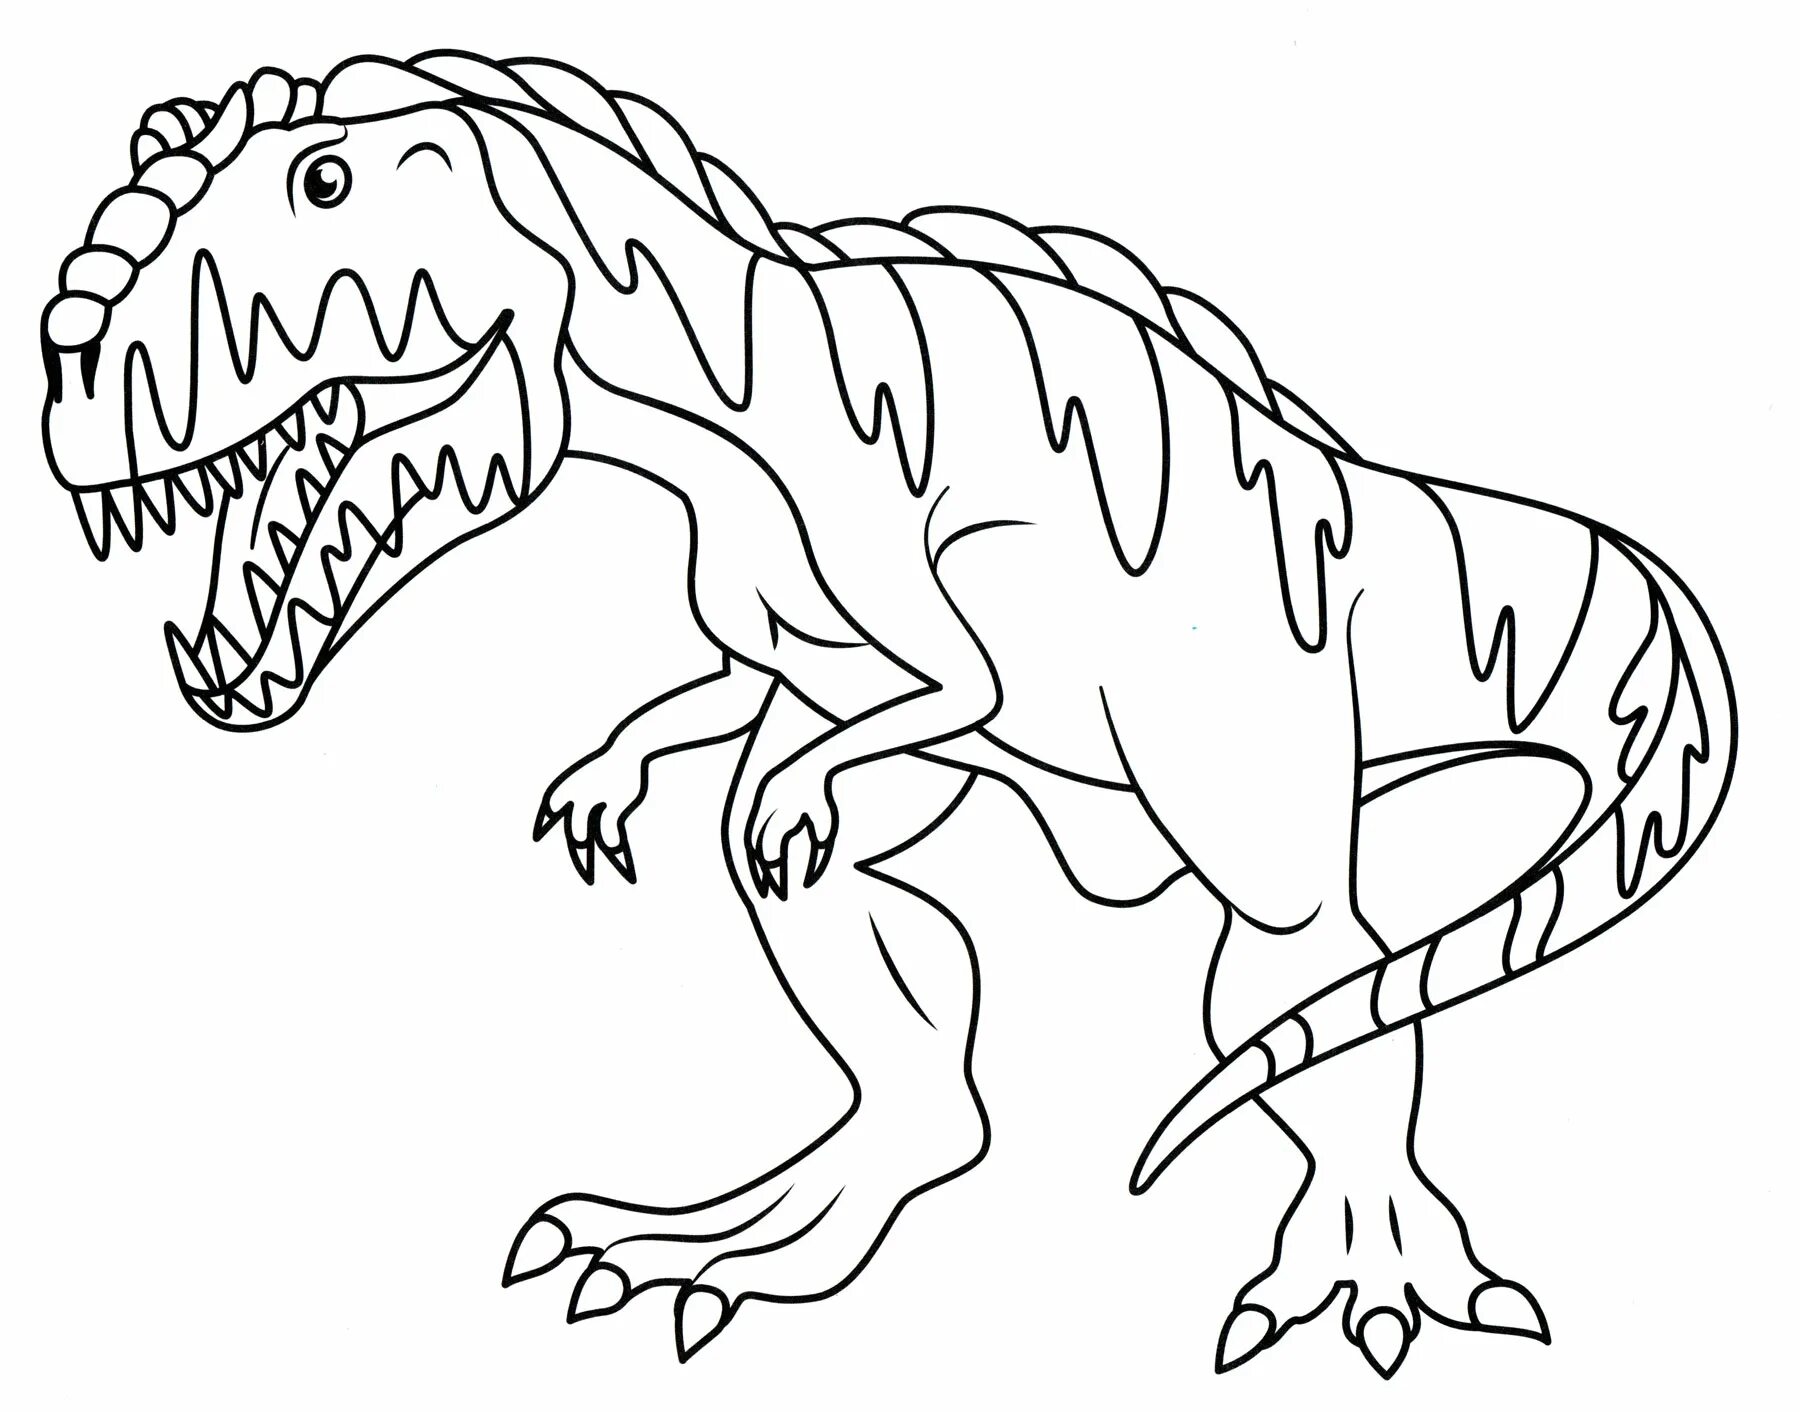 Раскраски динозавры а4. Раскраска динозавры гигантозавр. Динозавр раскраска для детей. Раскраска "Динозаврики". Раскраски для мальчиков динозавры.